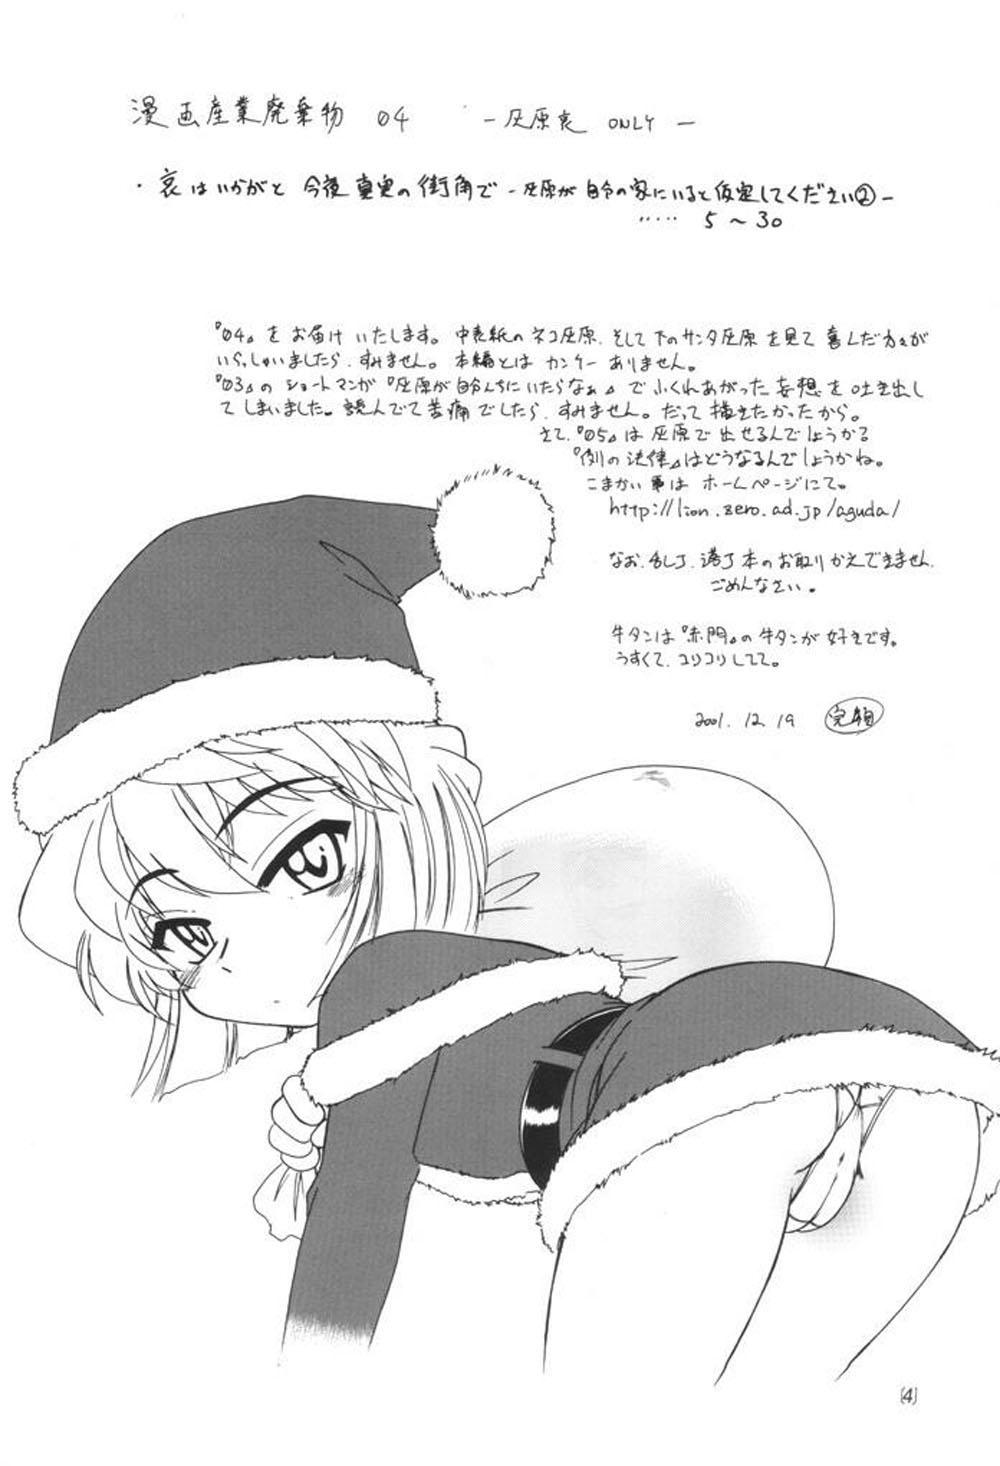 Escort Manga Sangyou Haikibutsu 04 - Detective conan Retro - Page 3